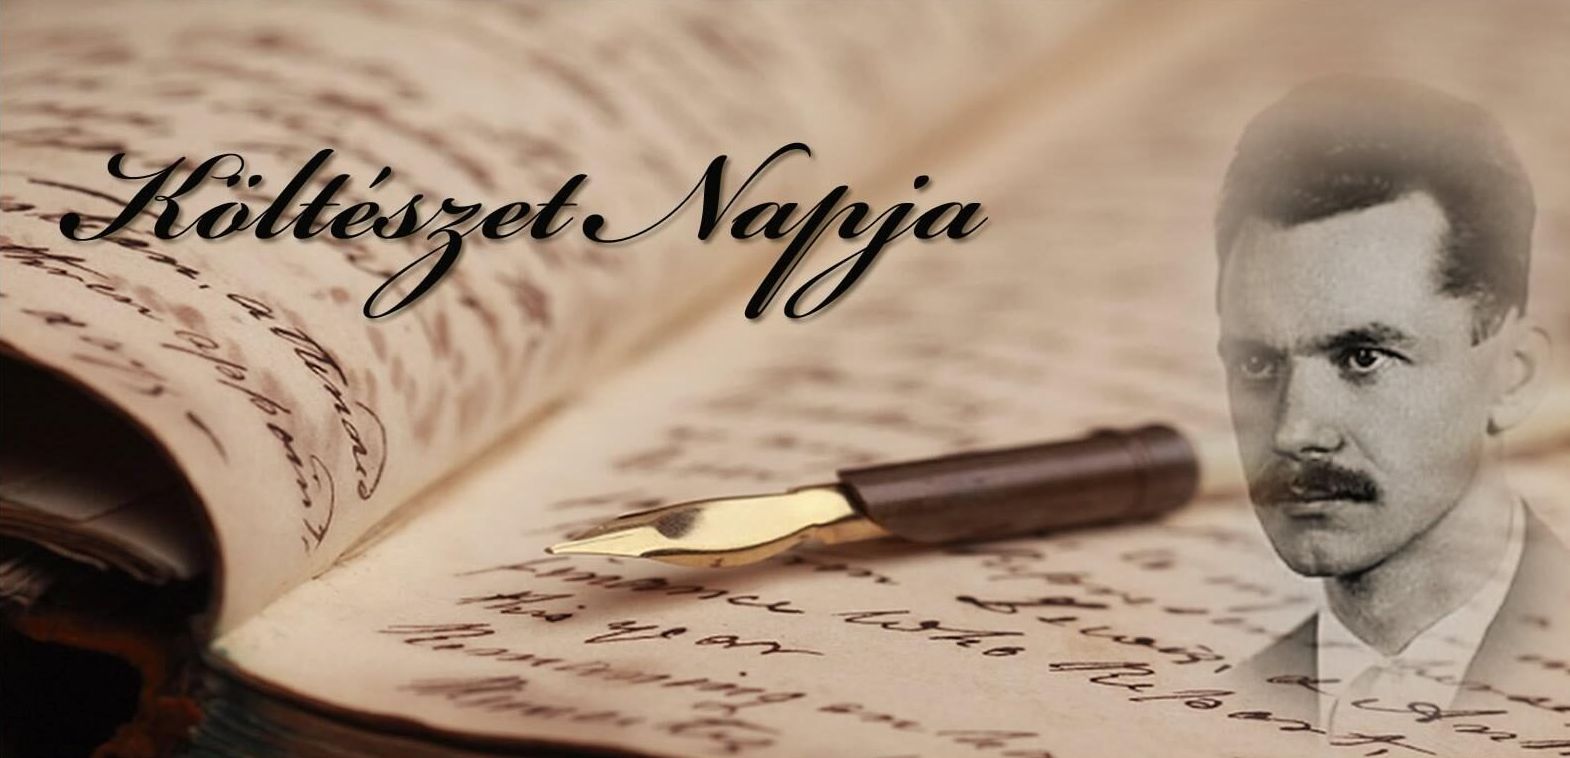 Magyar költészet napi programok Székesfehérváron április 11-én